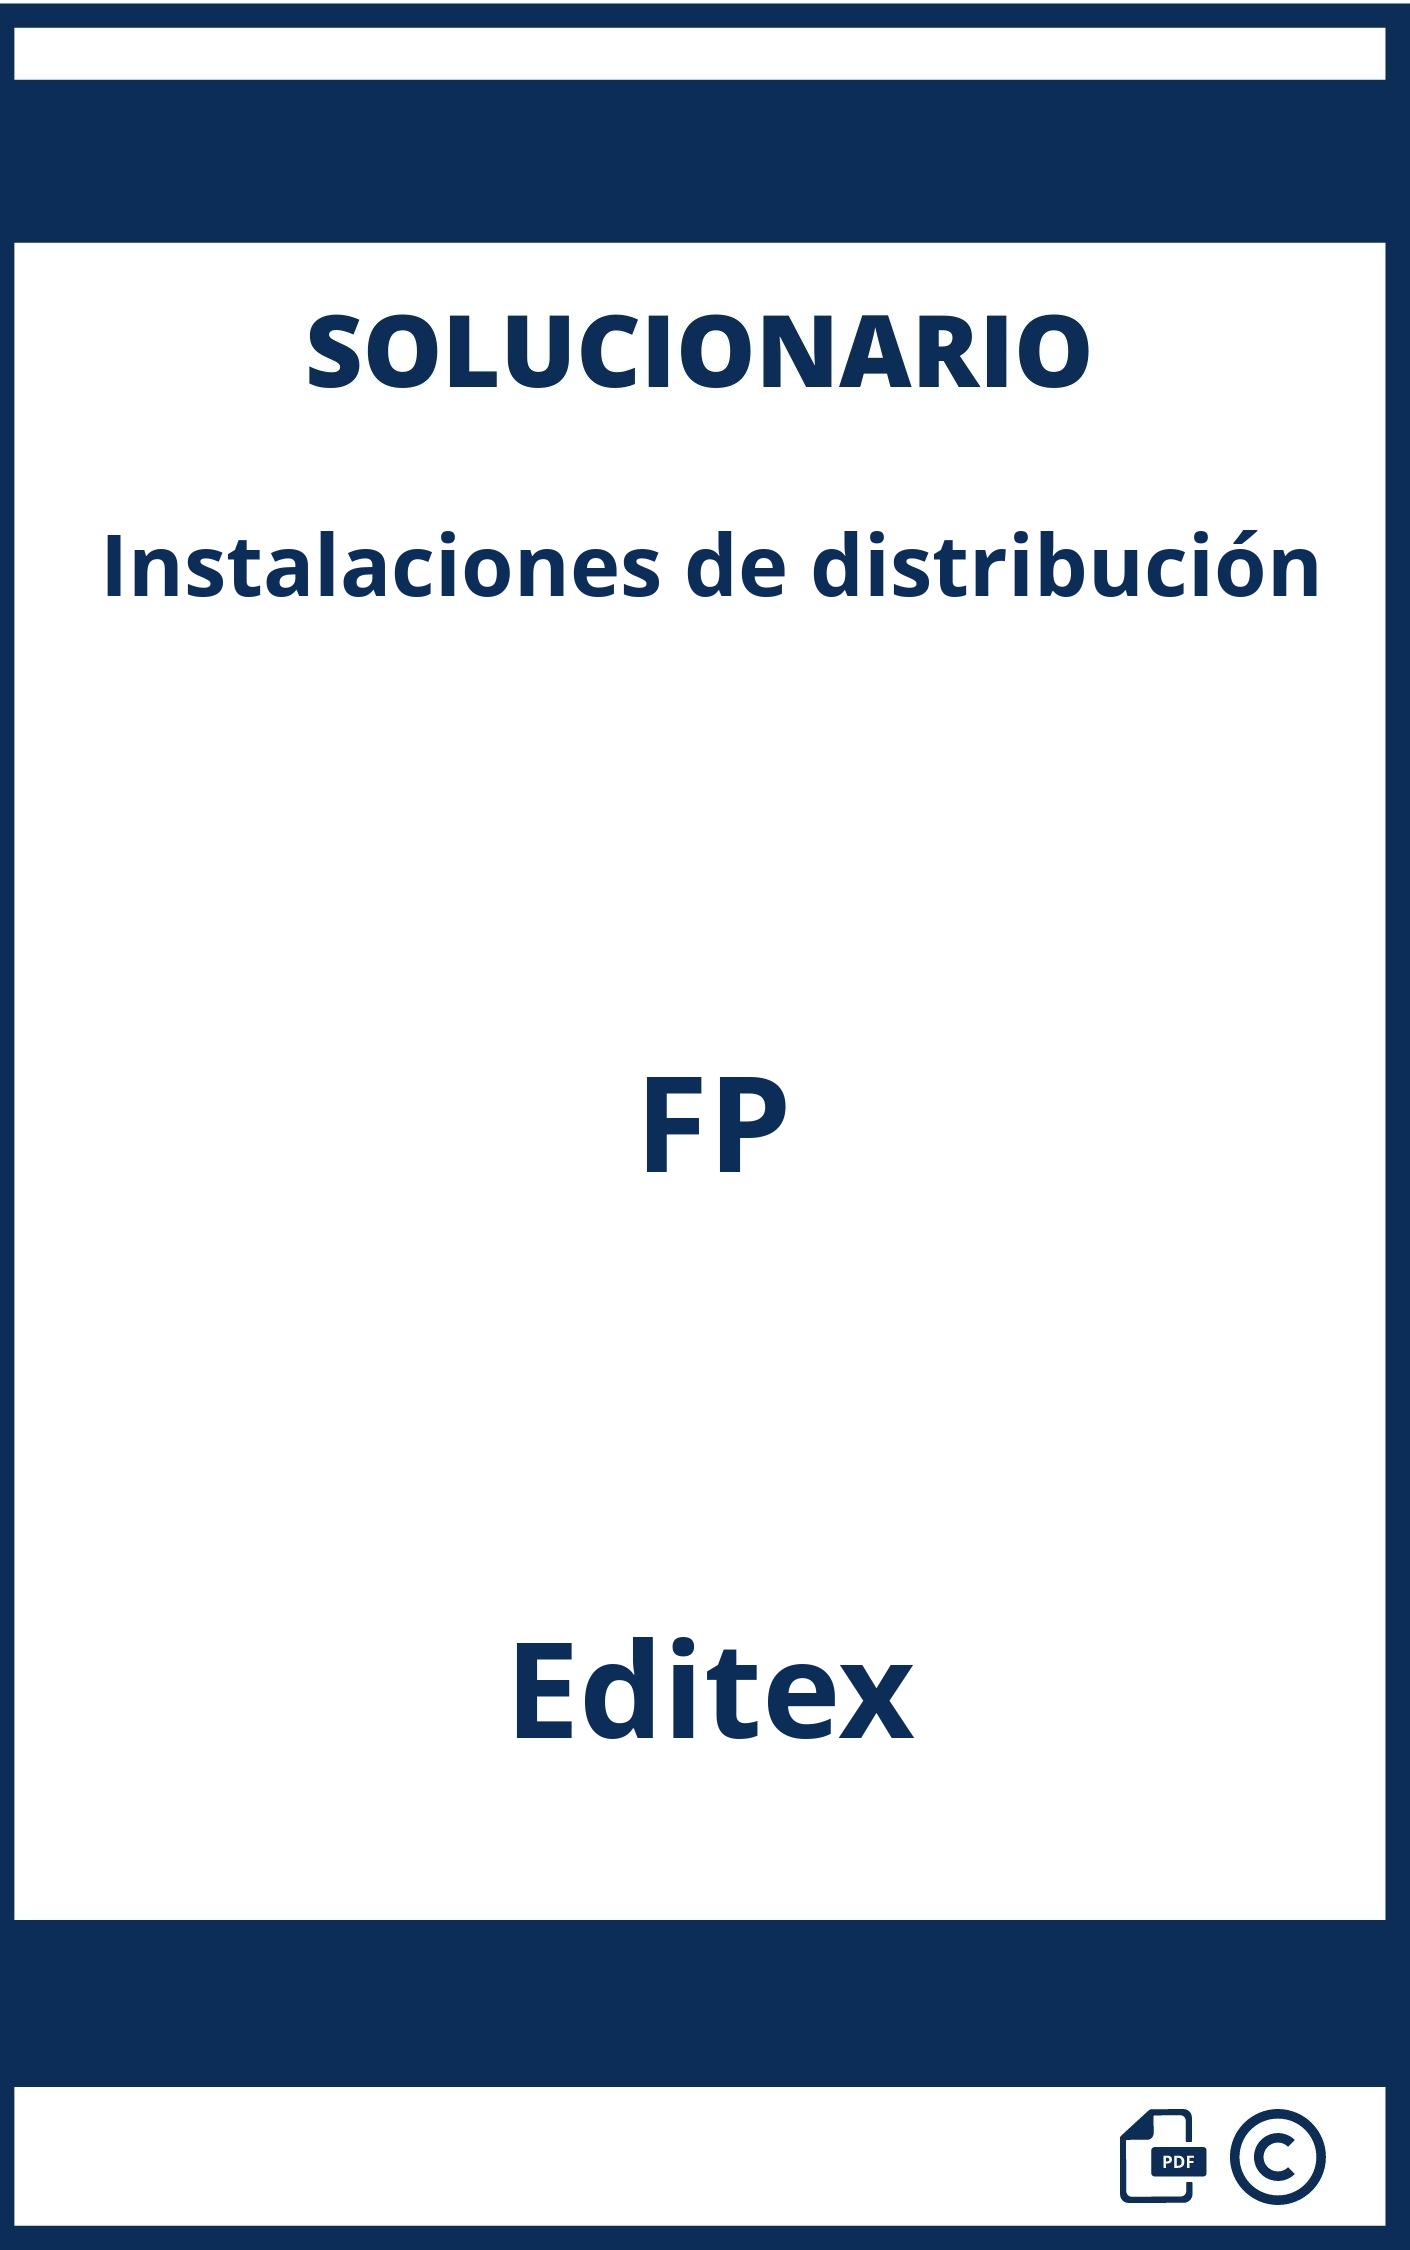 Solucionario Instalaciones de distribución FP Editex